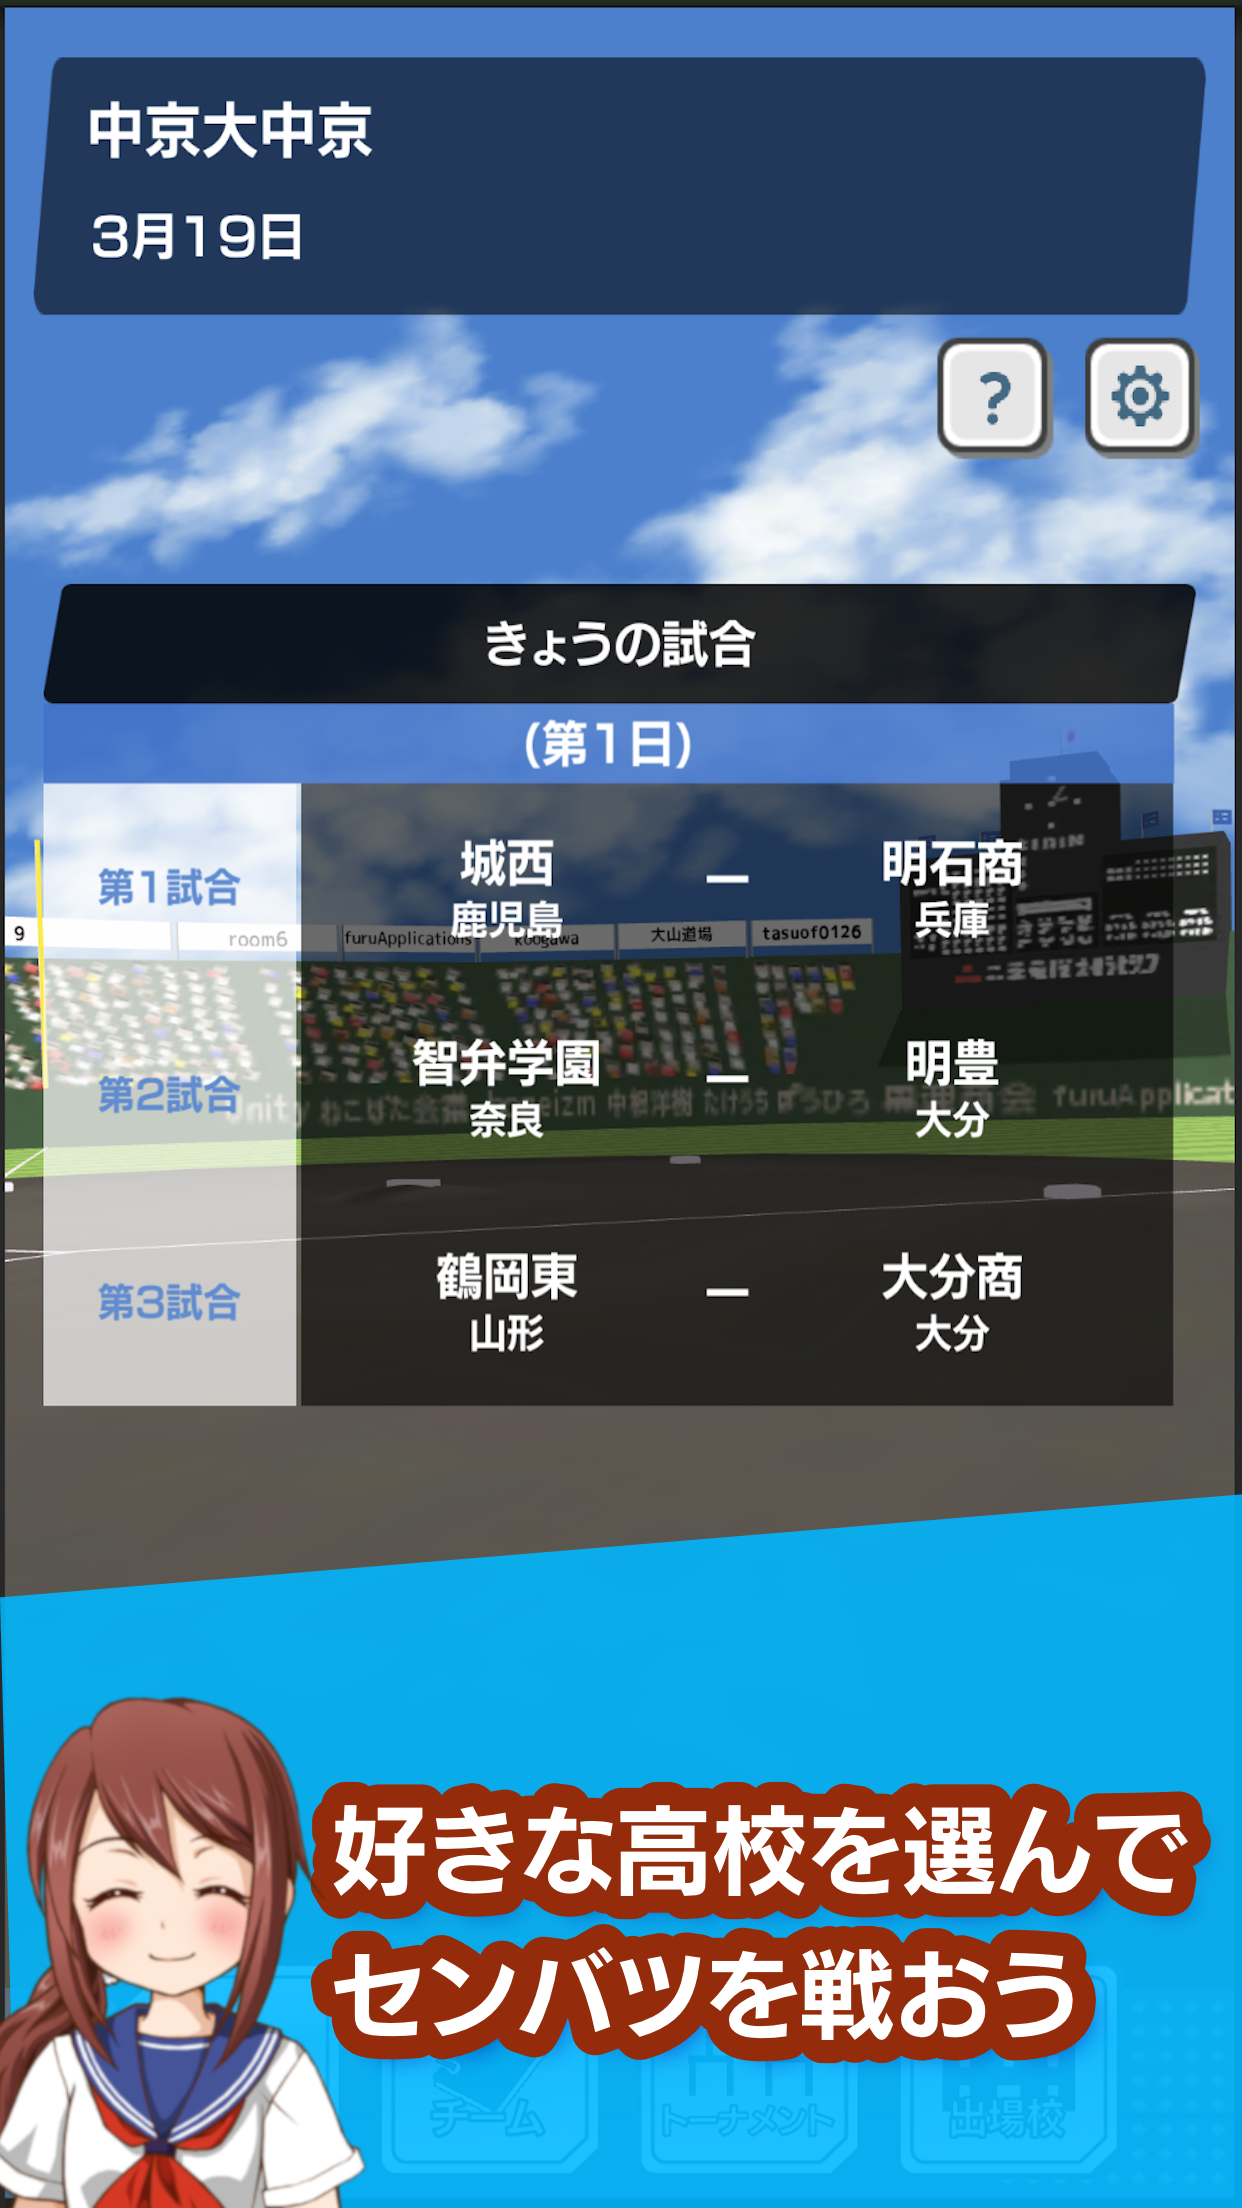 Screenshot 1 of Senbatsu 2020 Musim Semi Koshien 1.5